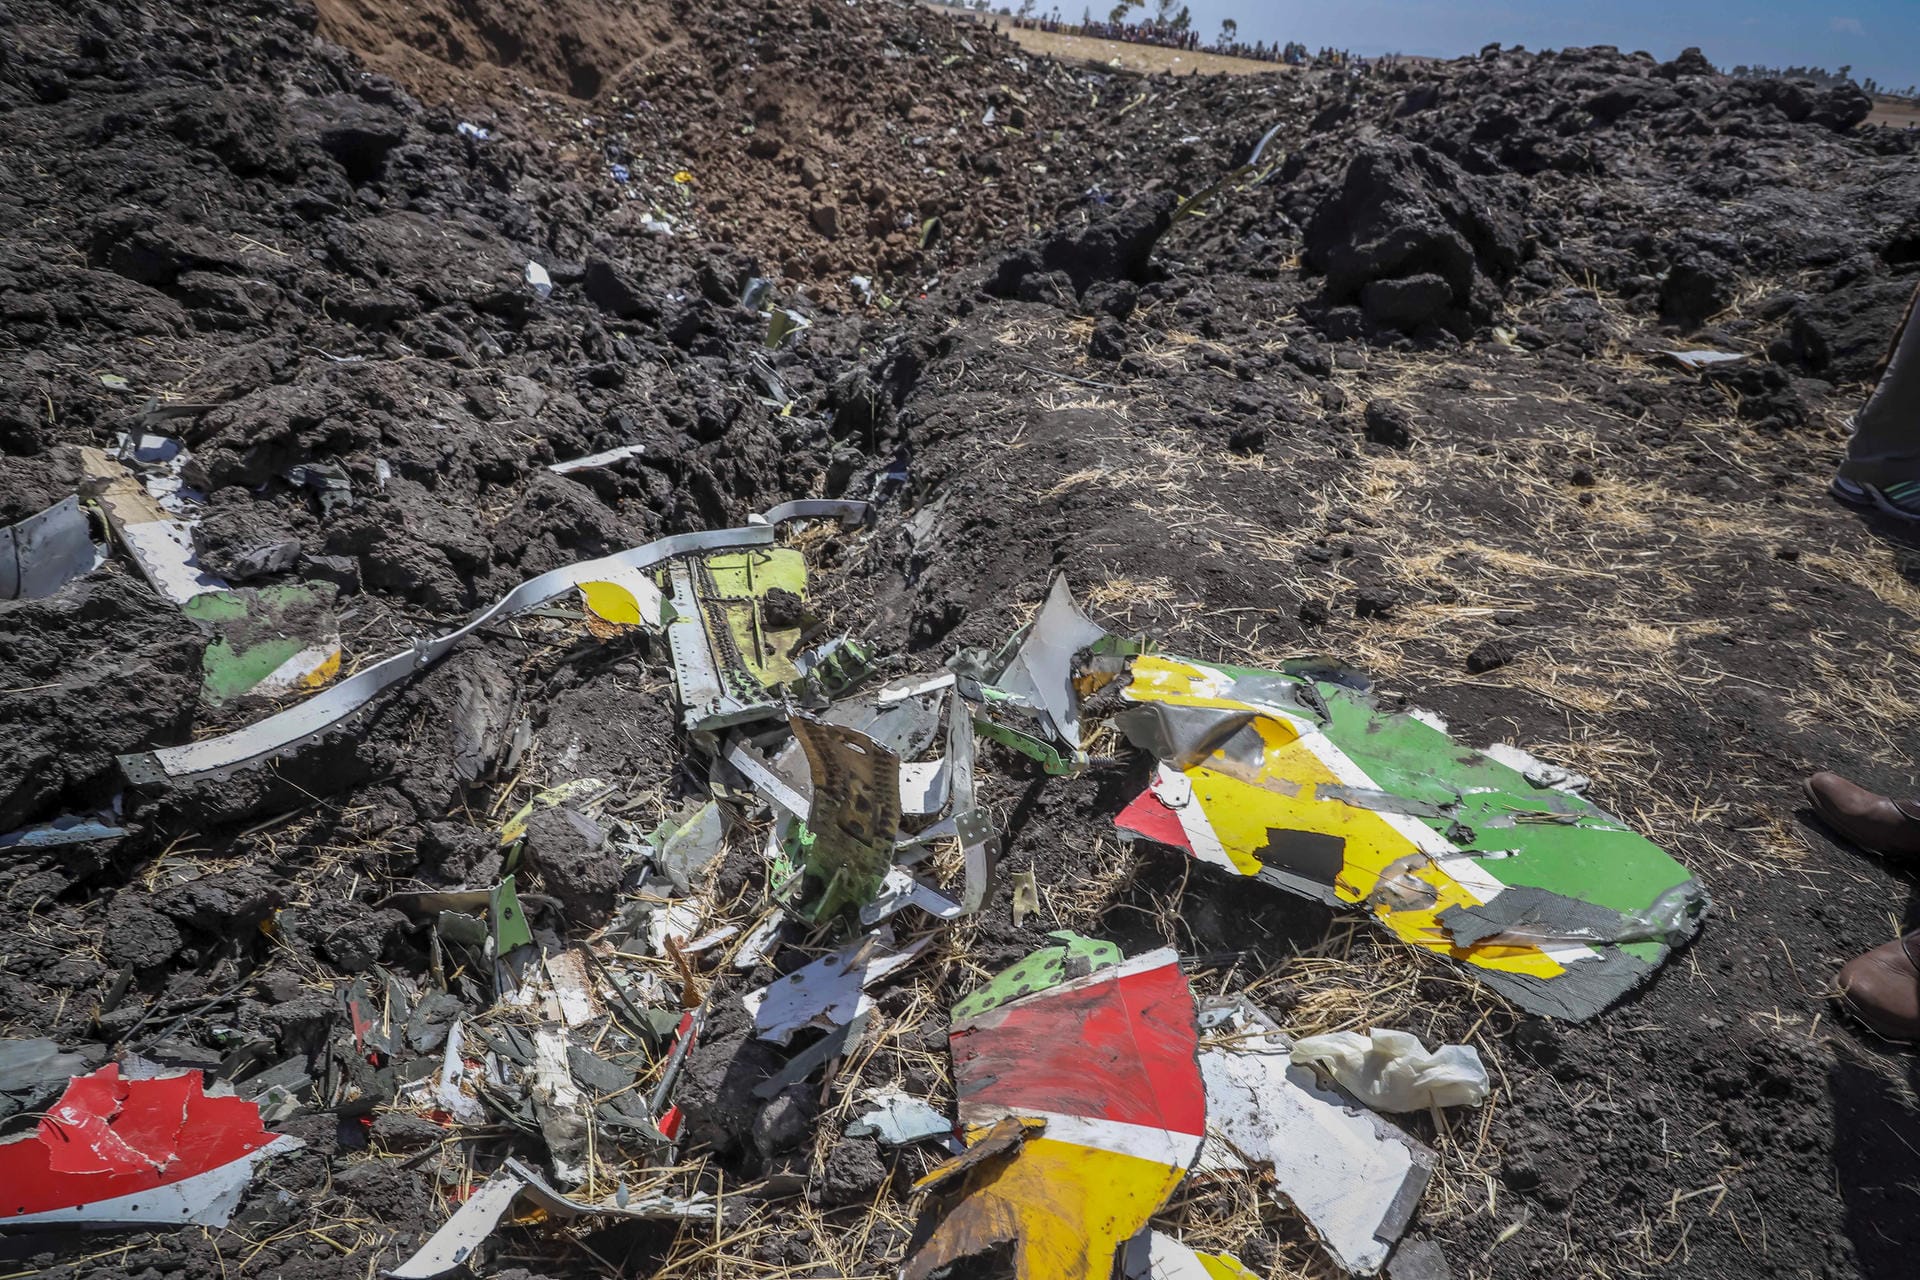 Inzwischen ist der Flugschreiber der verunglückten Maschine gefunden worden. Das berichtete Äthiopiens staatlicher Fernsehsender Fana. Ein Vertreter der Fluggesellschaft Ethiopian Airlines bestätigte dies und erklärte, die Blackbox sei ersten Erkenntnissen zufolge beschädigt.